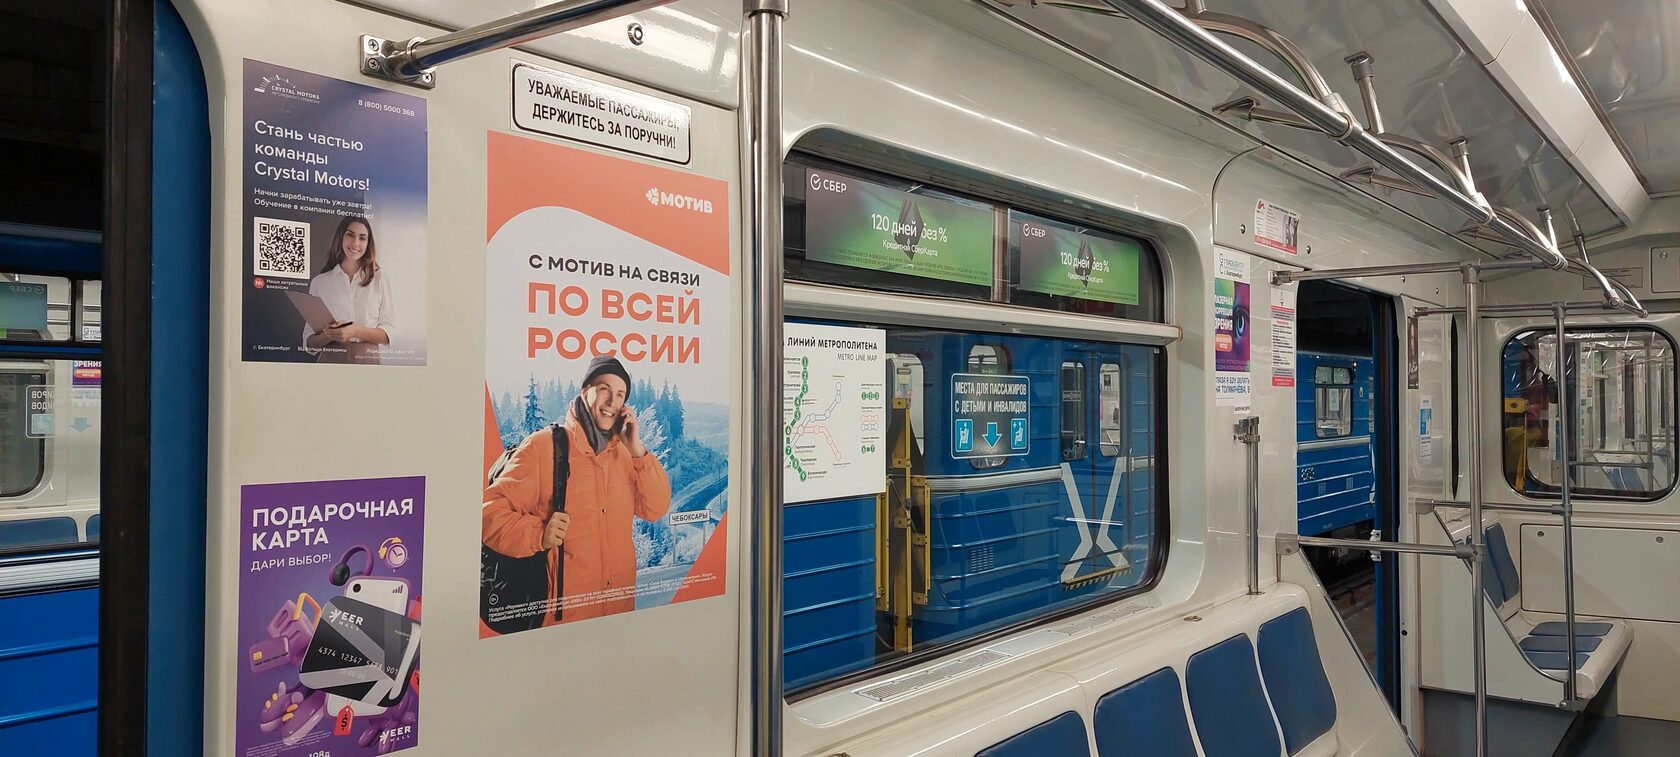 Реклама в метро в Екатеринбурге, которая действительно работает